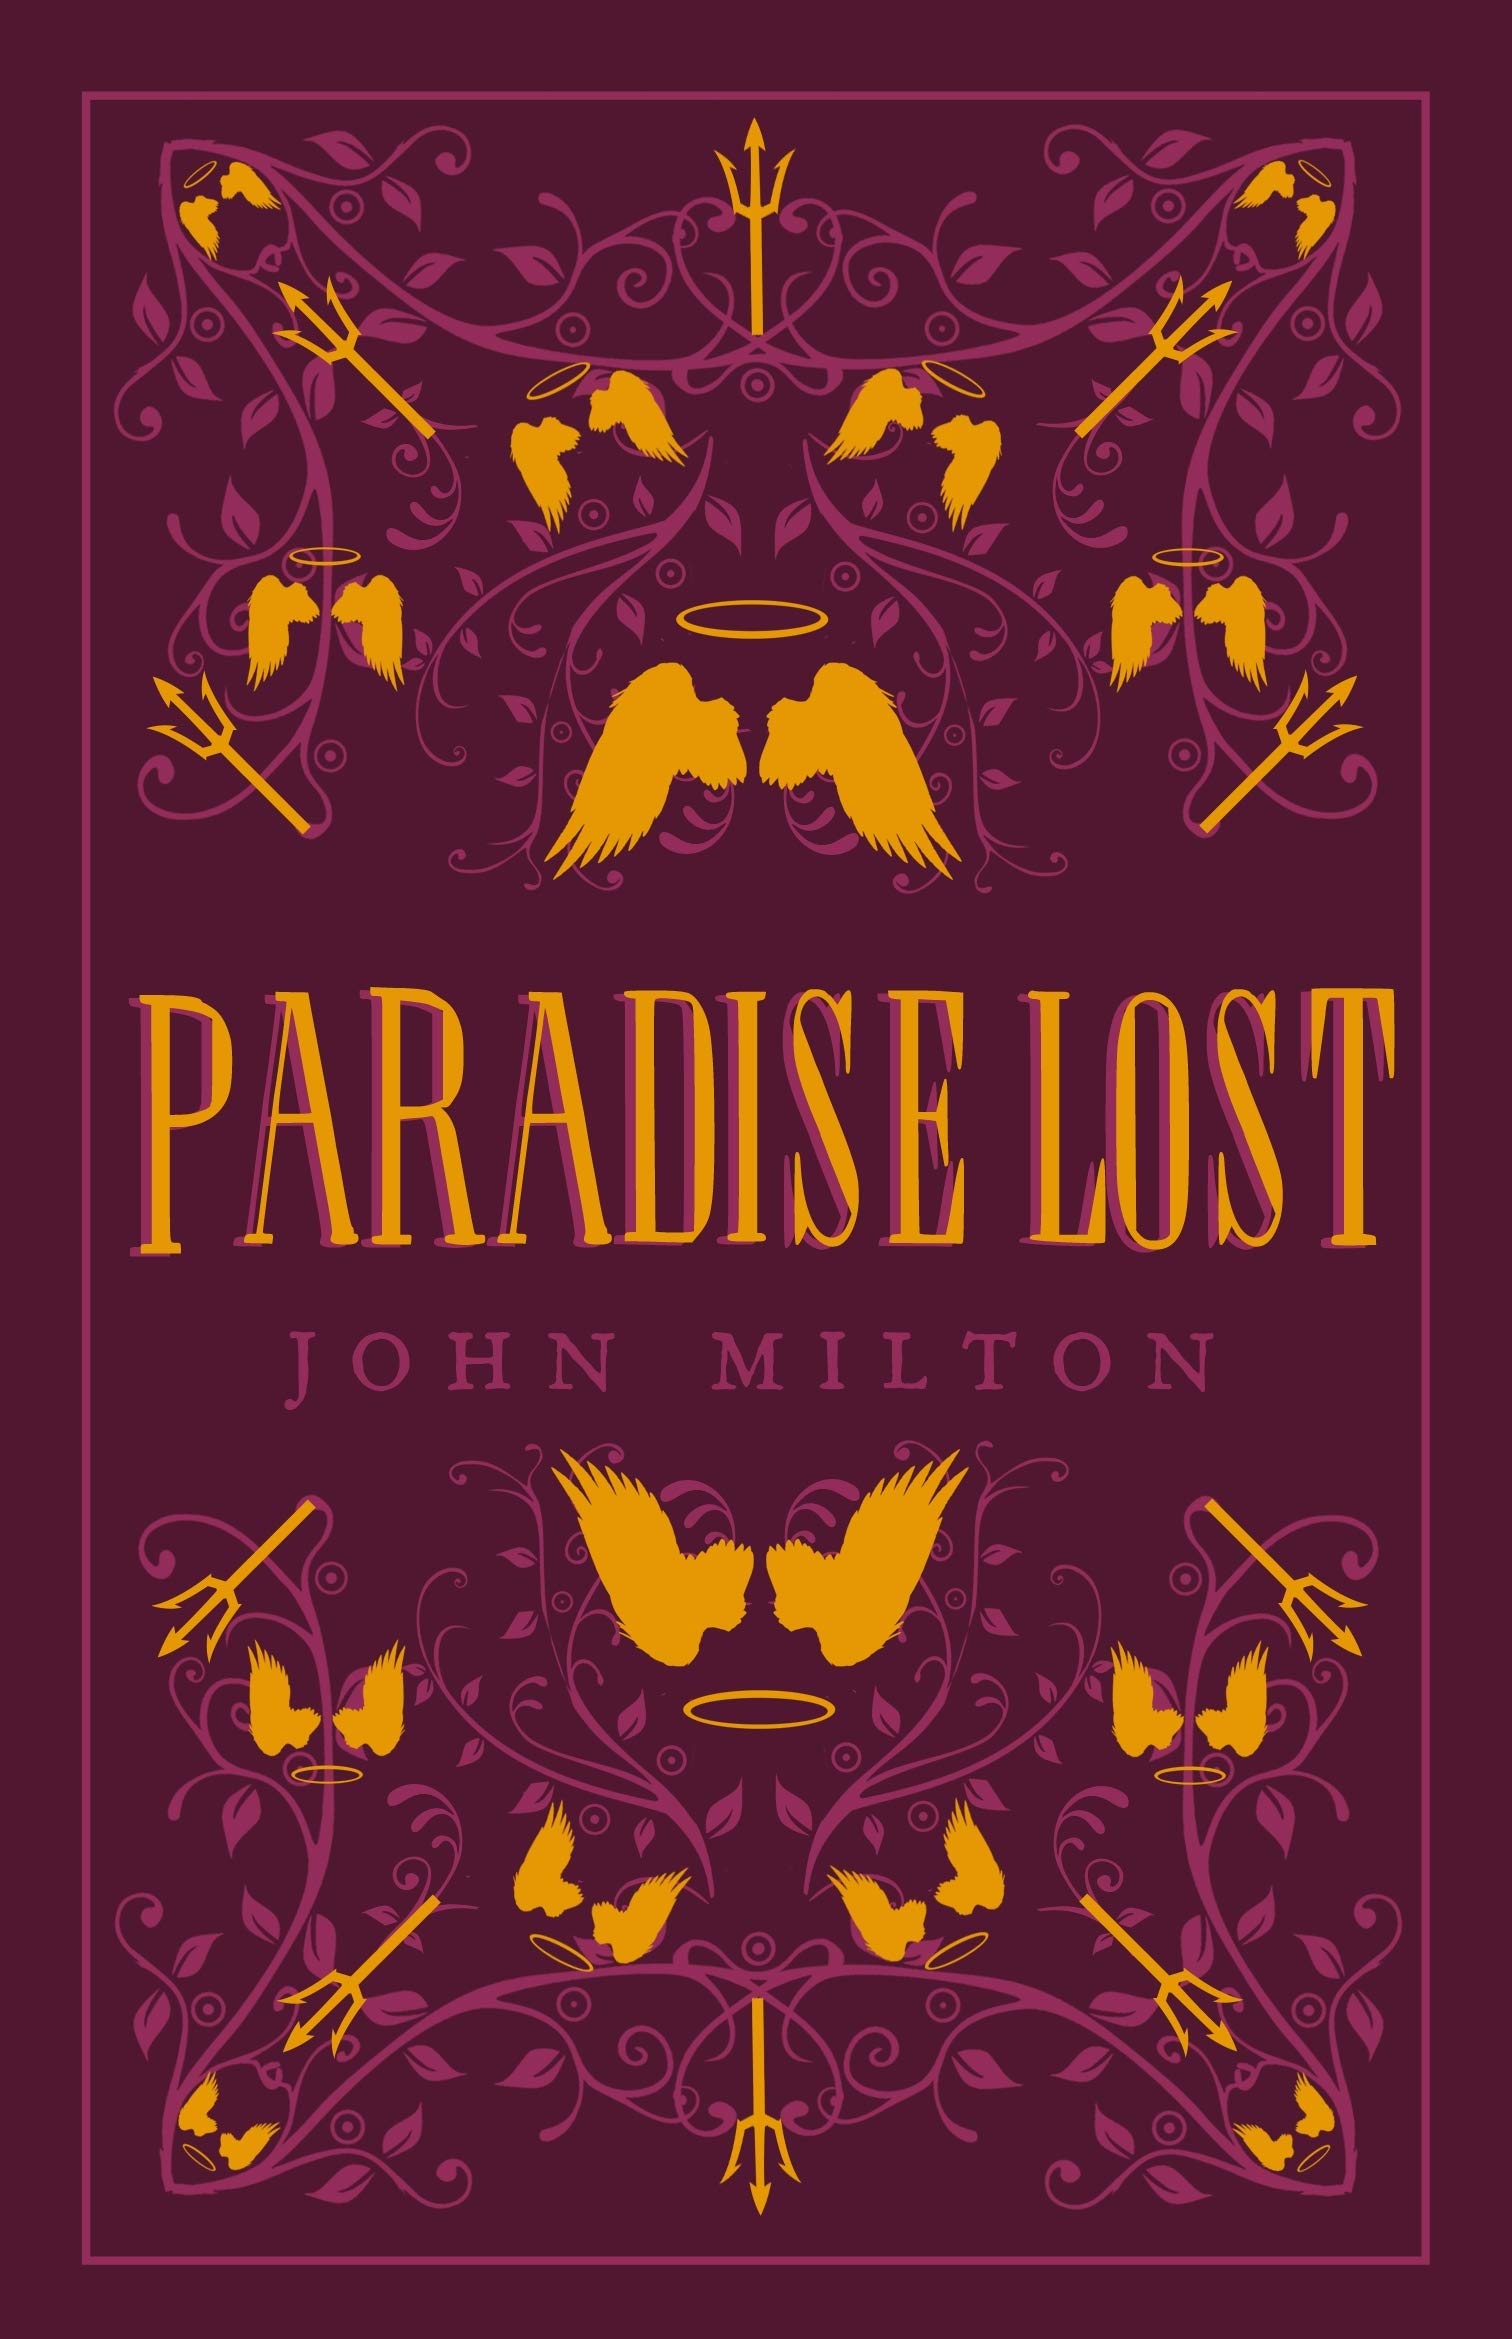 Coperta cărții: Paradise Lost - lonnieyoungblood.com